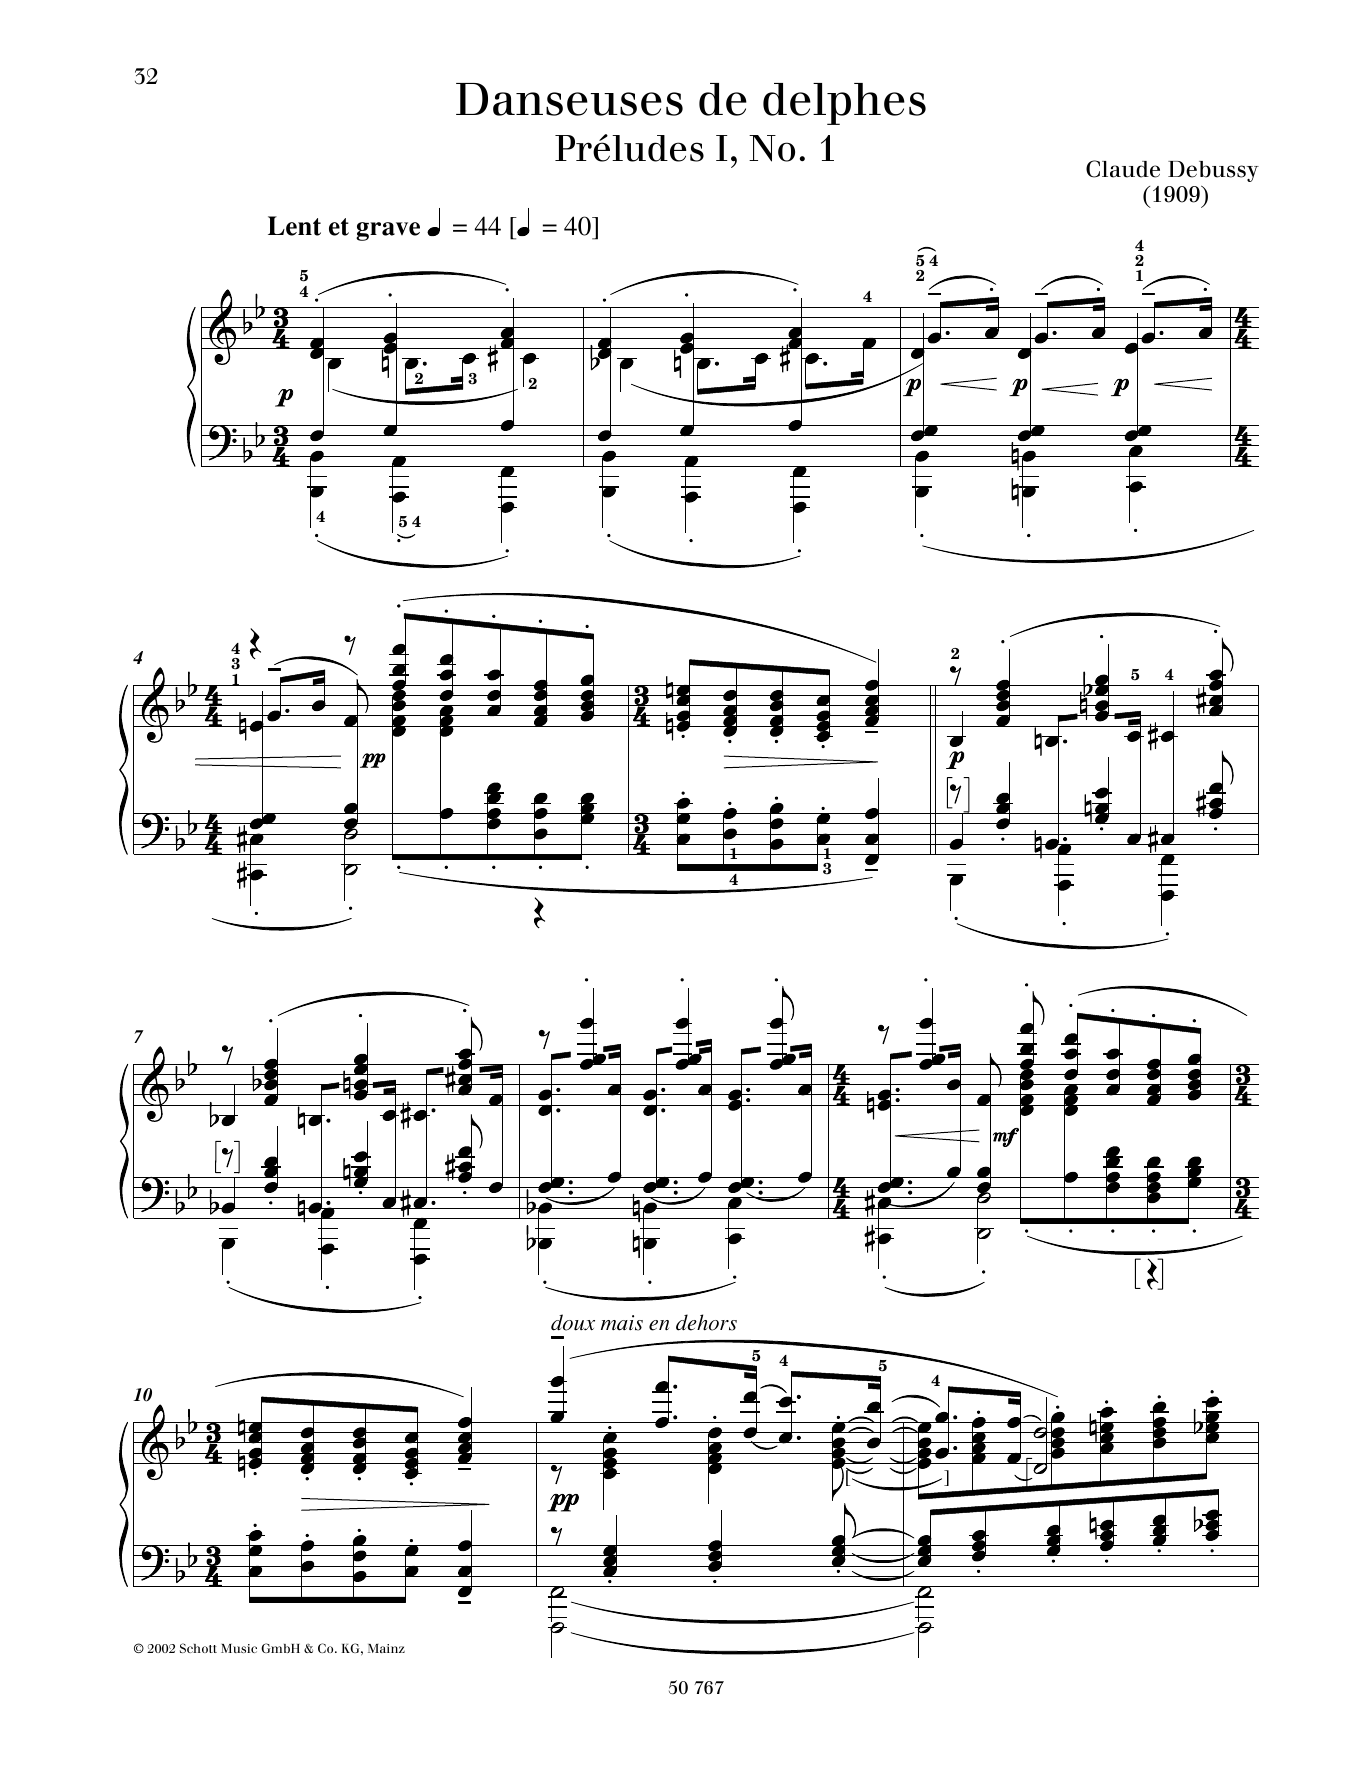 Download Claude Debussy Danseuses de Delphes Sheet Music